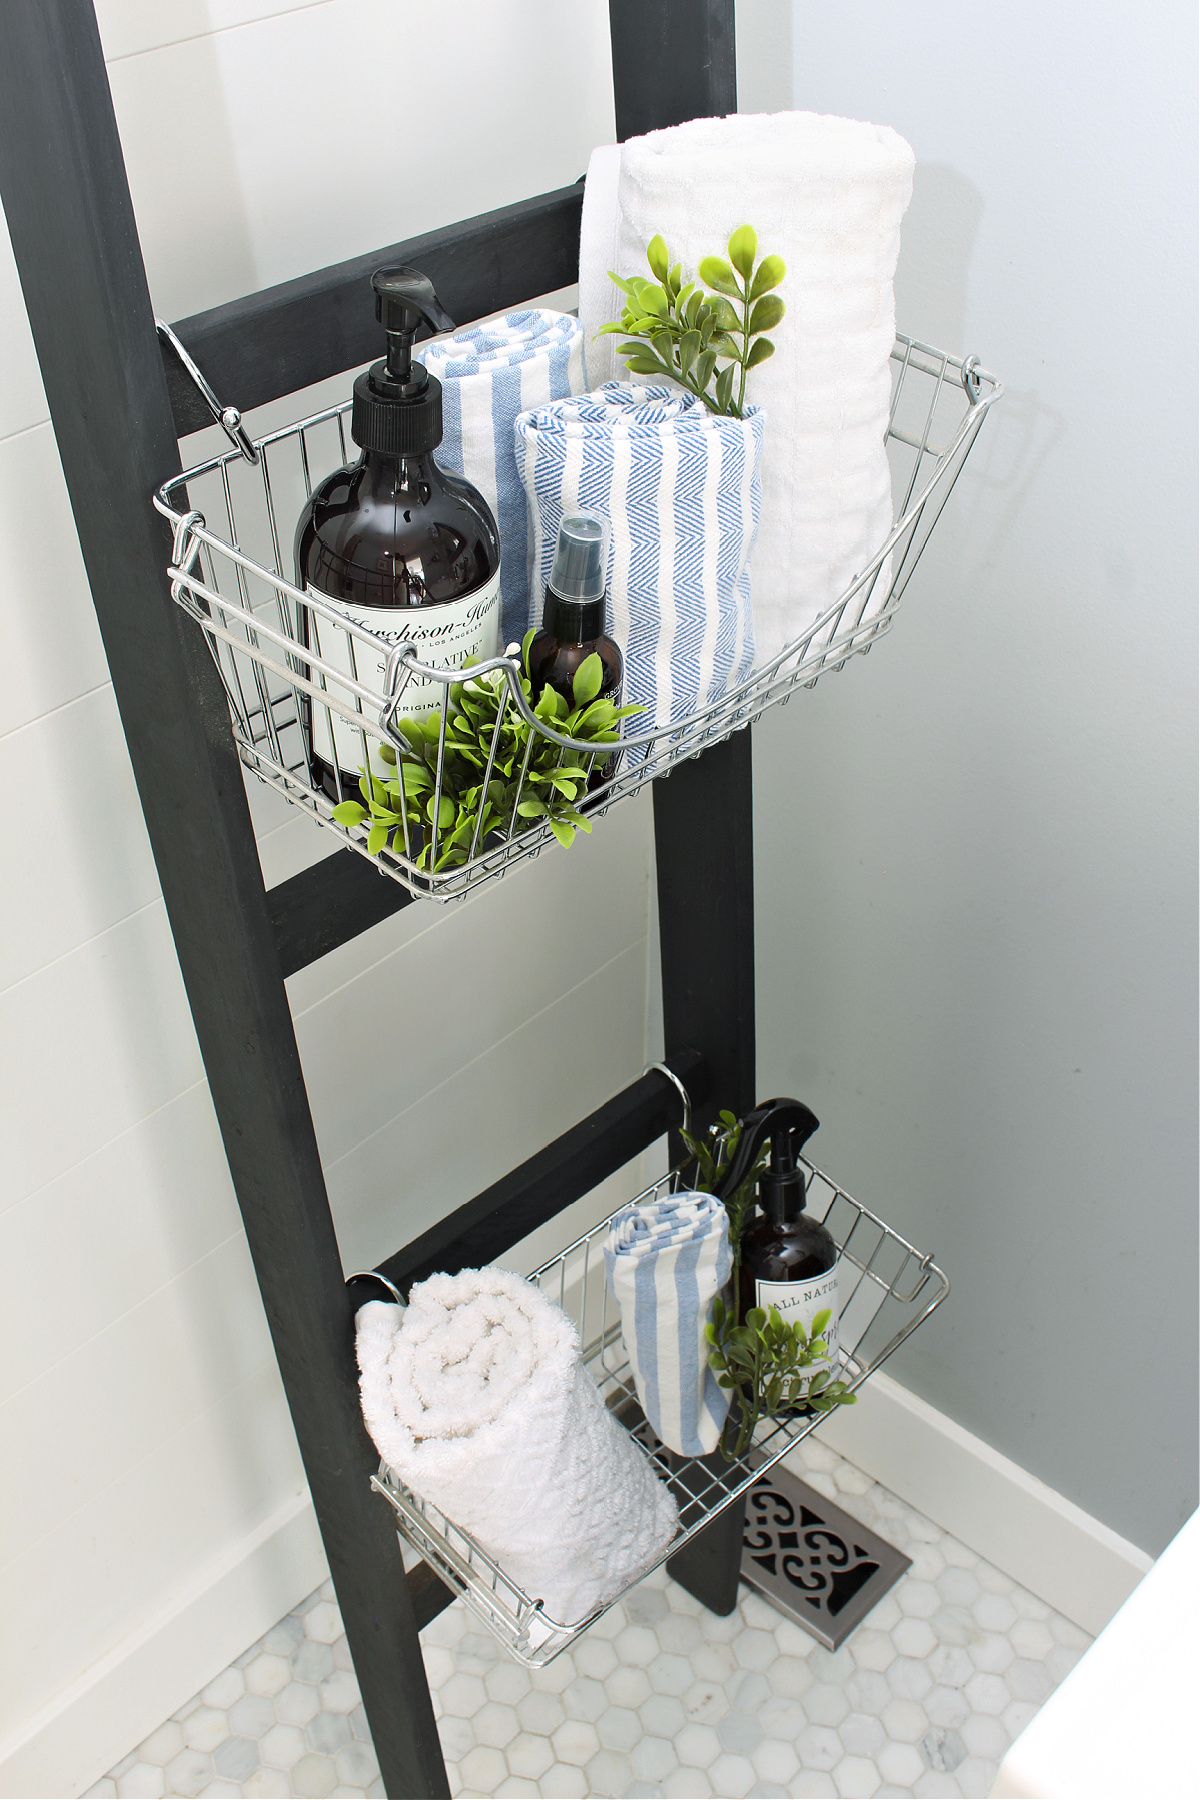 Black DIY bathroom storage ladder with wire baskets.